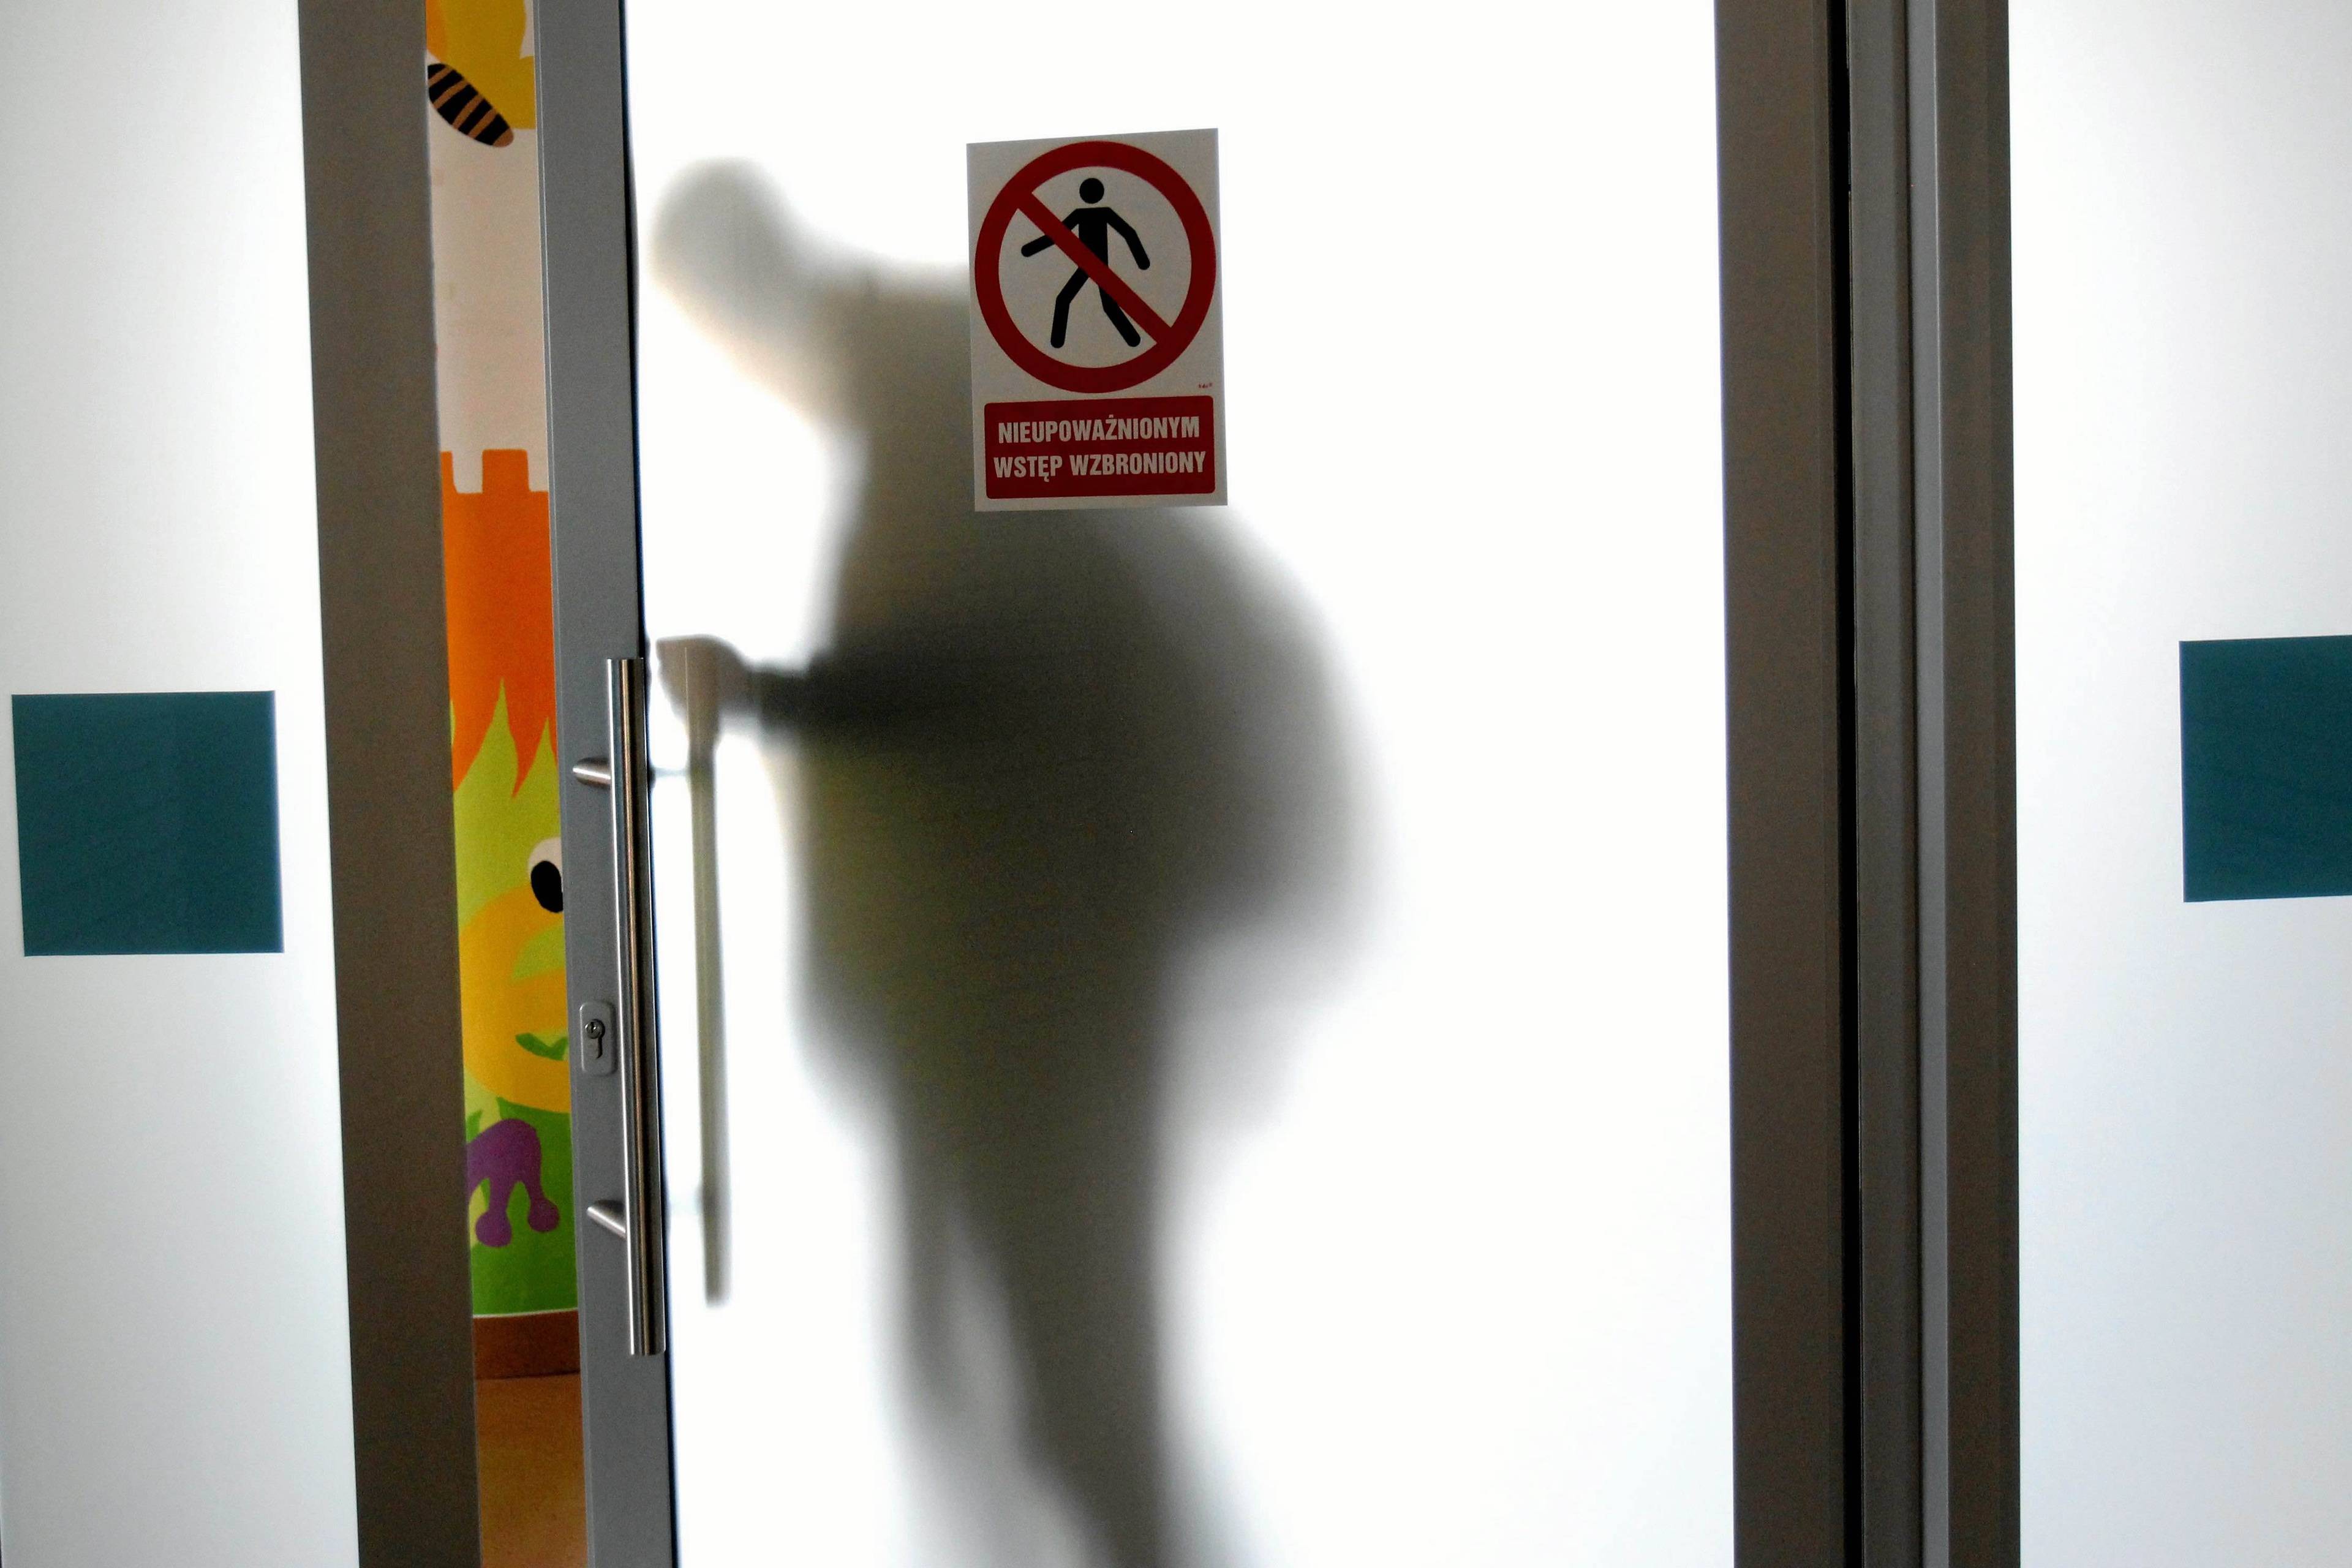 Drzwi z mlecznego szkła w placówce szpitalnej, za drzwiami widać cień człowieka, na d drzwiami napis „Nieupoważnionym wstęp wzbroniony” . Choroba genetyczna